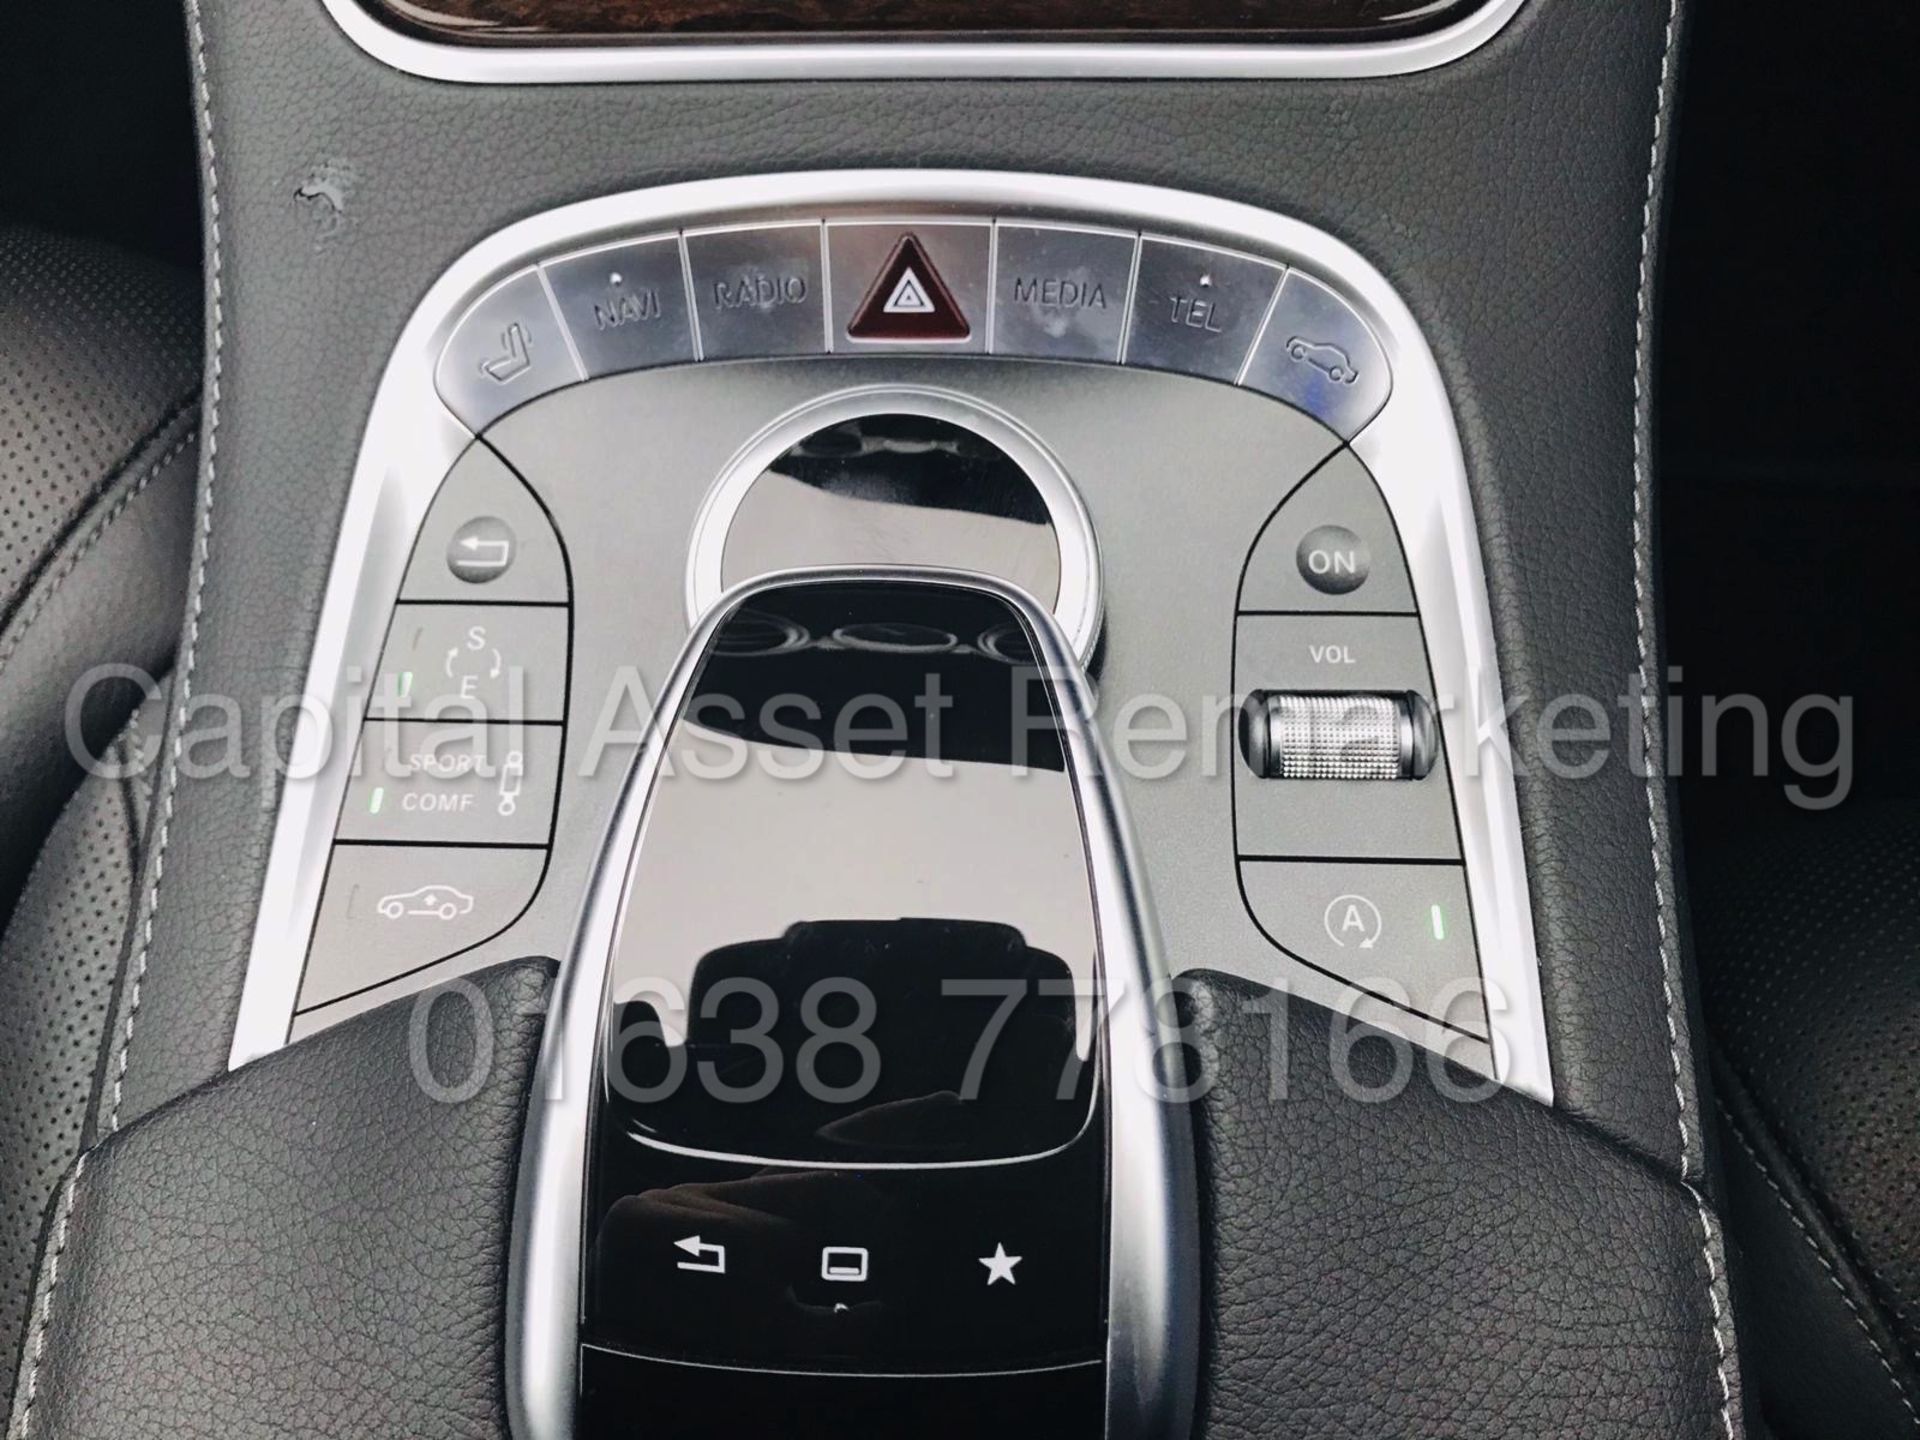 MERCEDES-BENZ S350D *LIMO VERSION* 4 DOOR SALOON (2015 - NEW MODEL) '3.0 DIESEL - AUTO' *HUGE SPEC* - Image 18 of 31